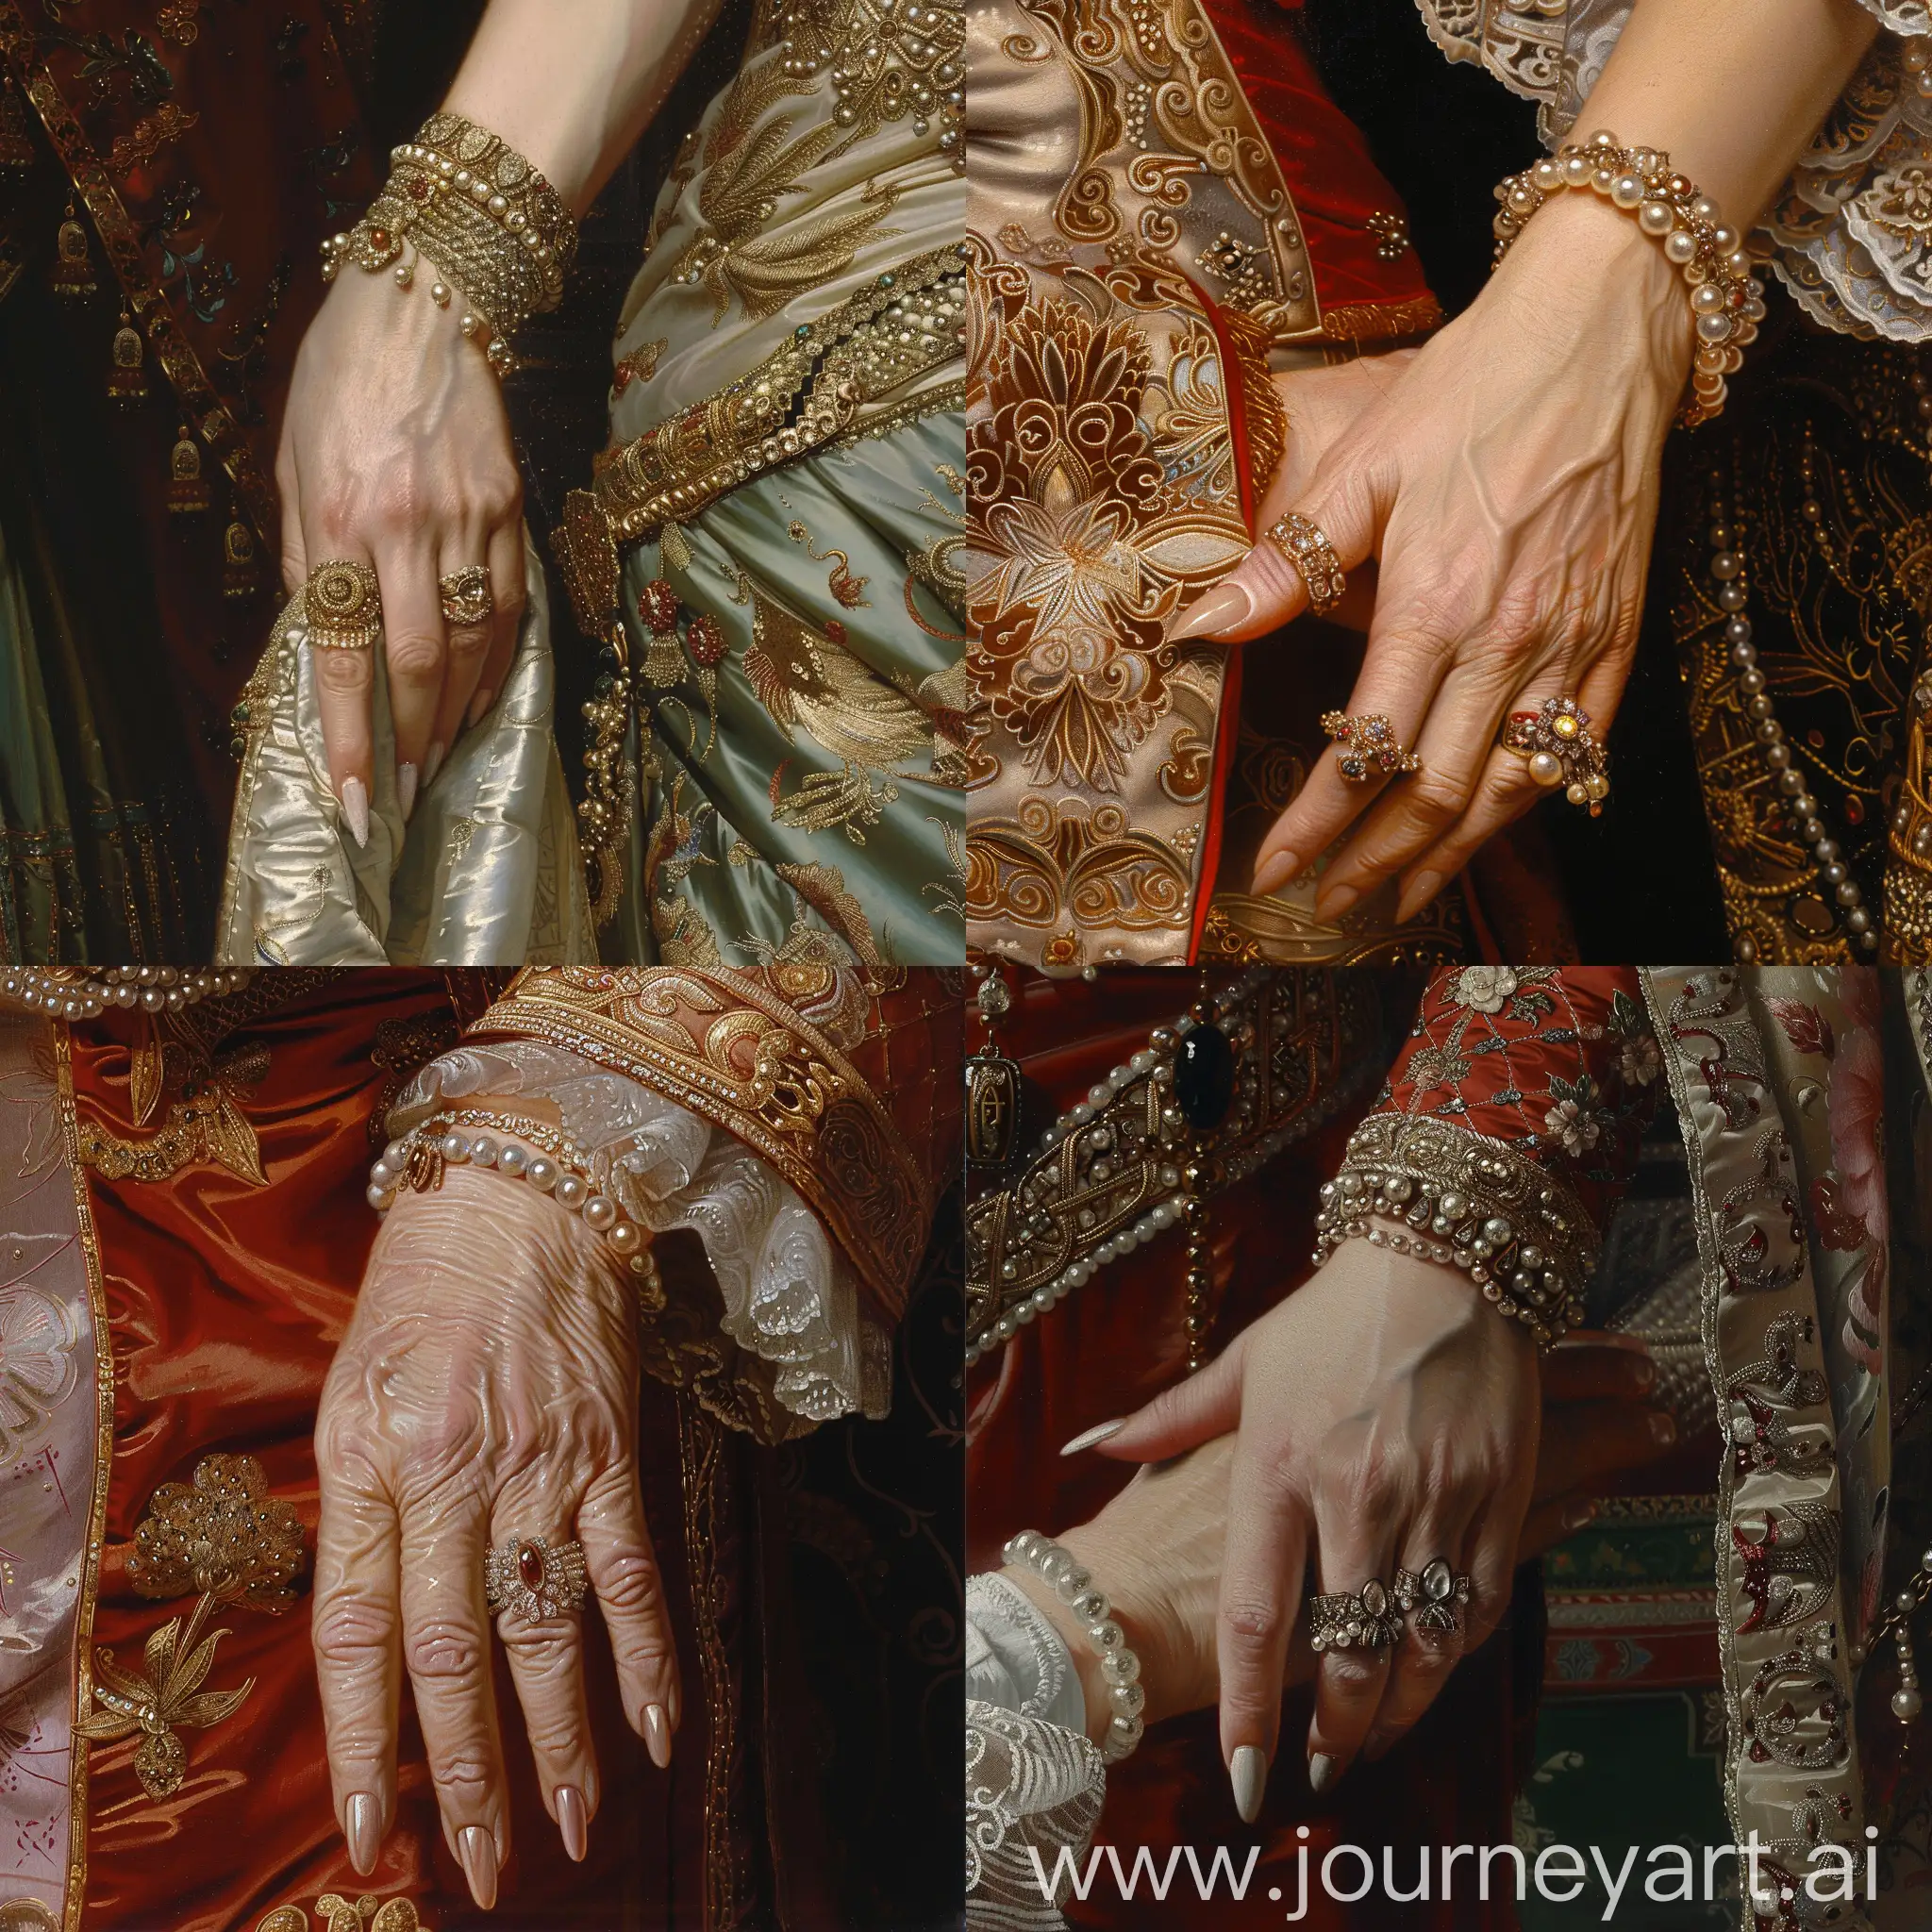 画慈禧太后走路时，手搭在侍女的手臂上的图片，突出她的手，细腻白皙，戴着长长的指甲套，带满了华丽昂贵的珠宝。细节丰富 高清
